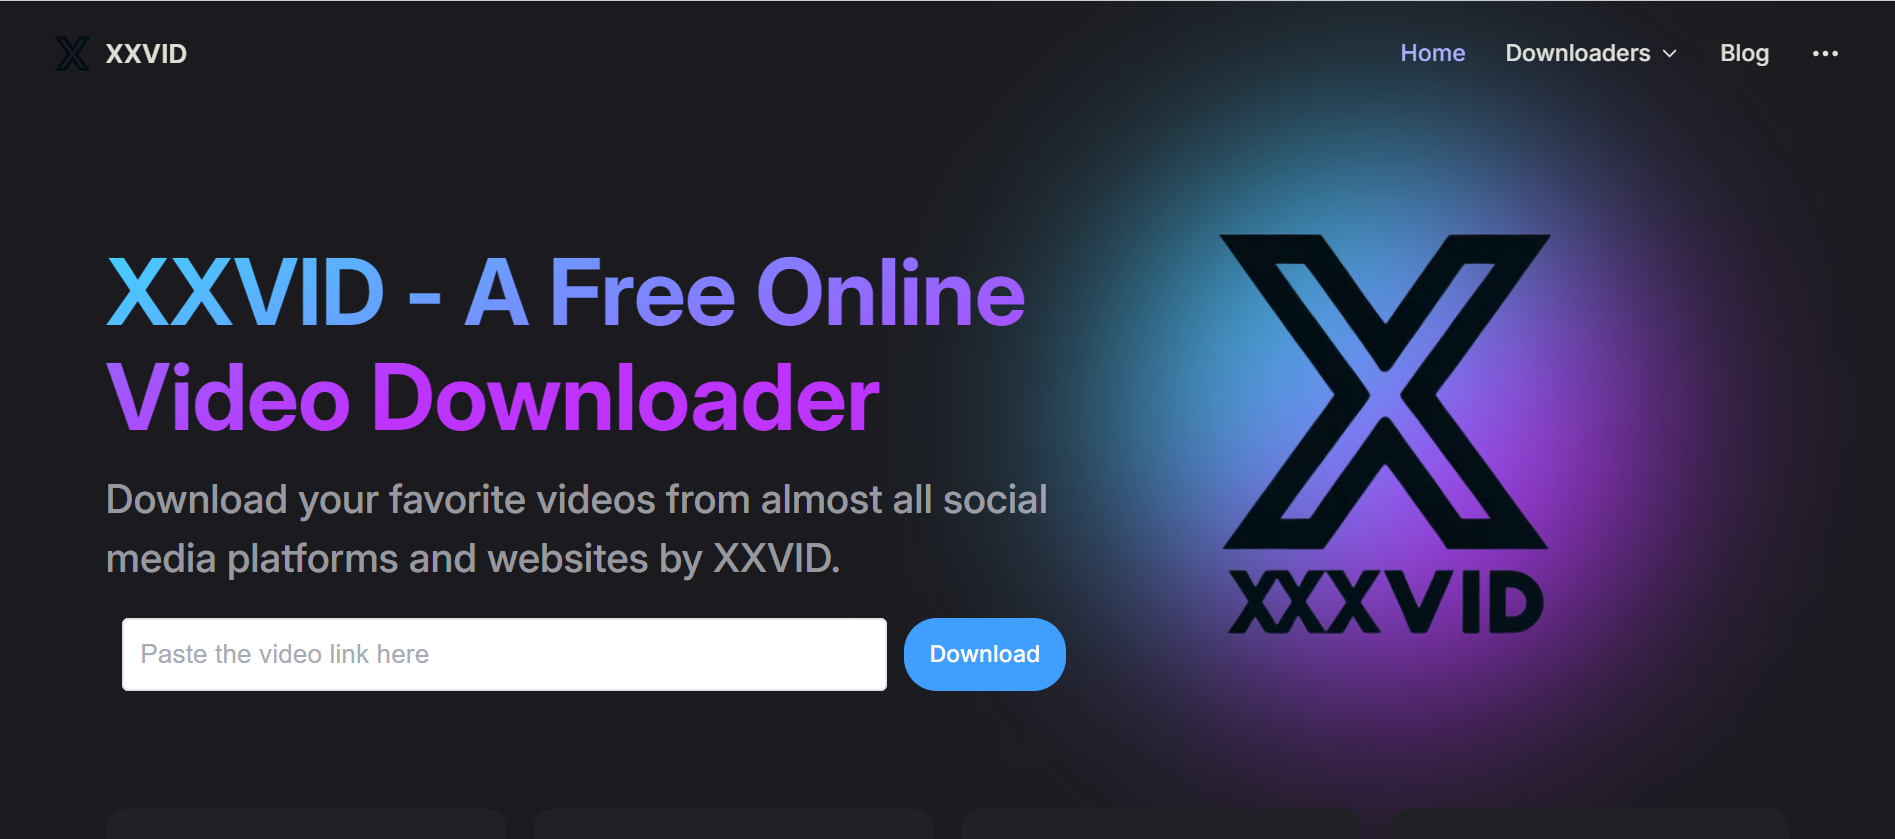 xxvid pornhub video downloader